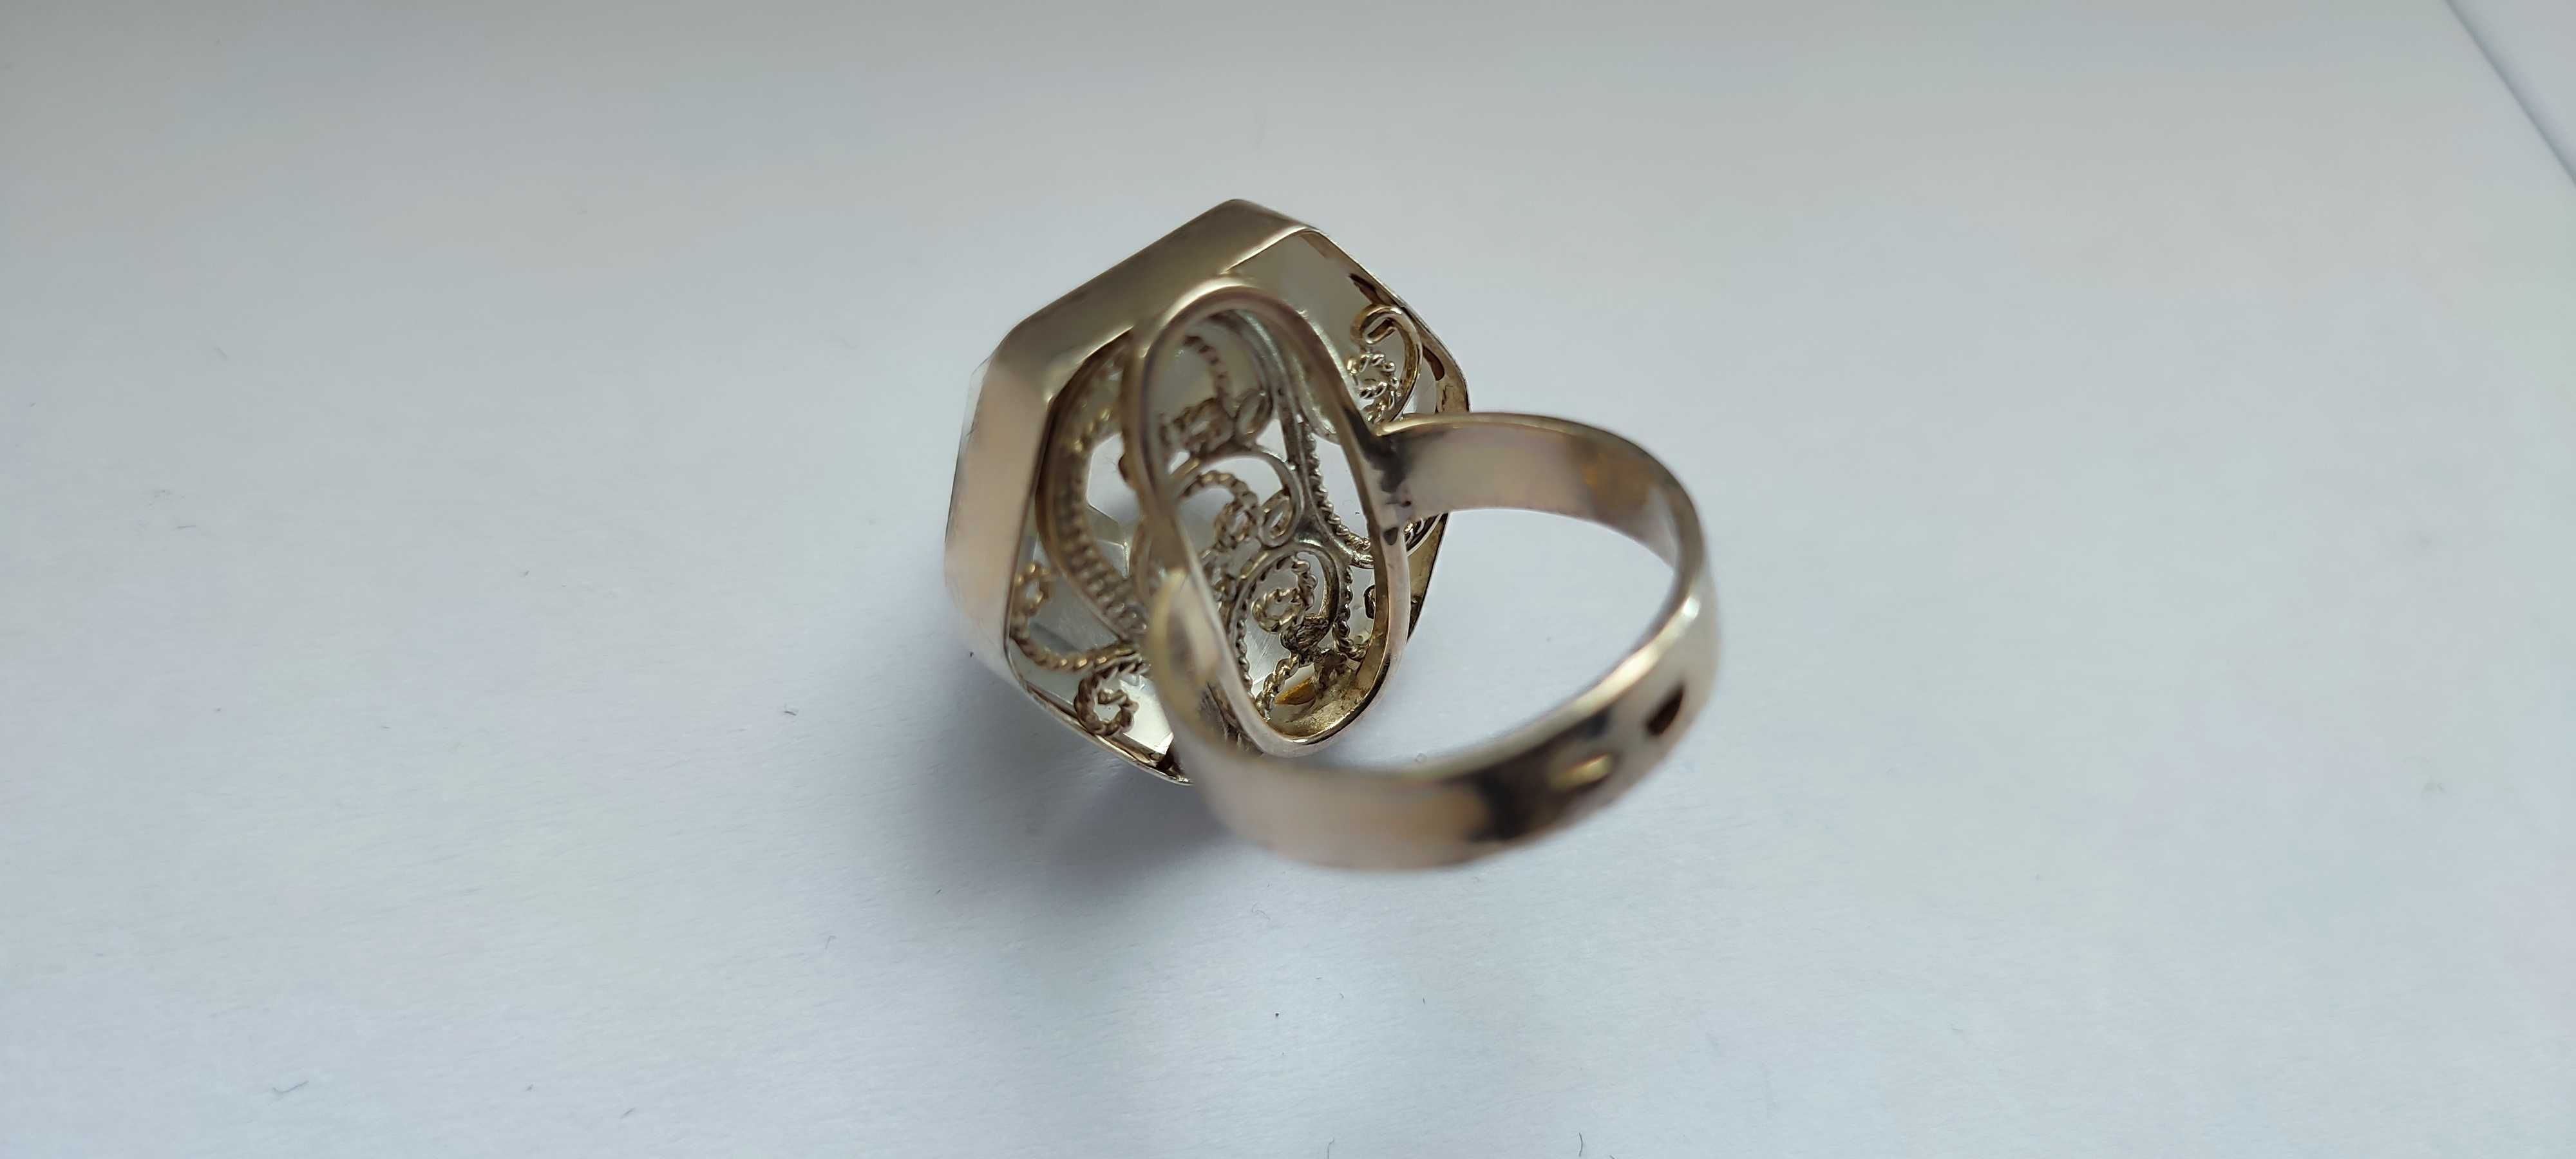 Необычное женское кольцо с крупным камнем ЦИТРИН